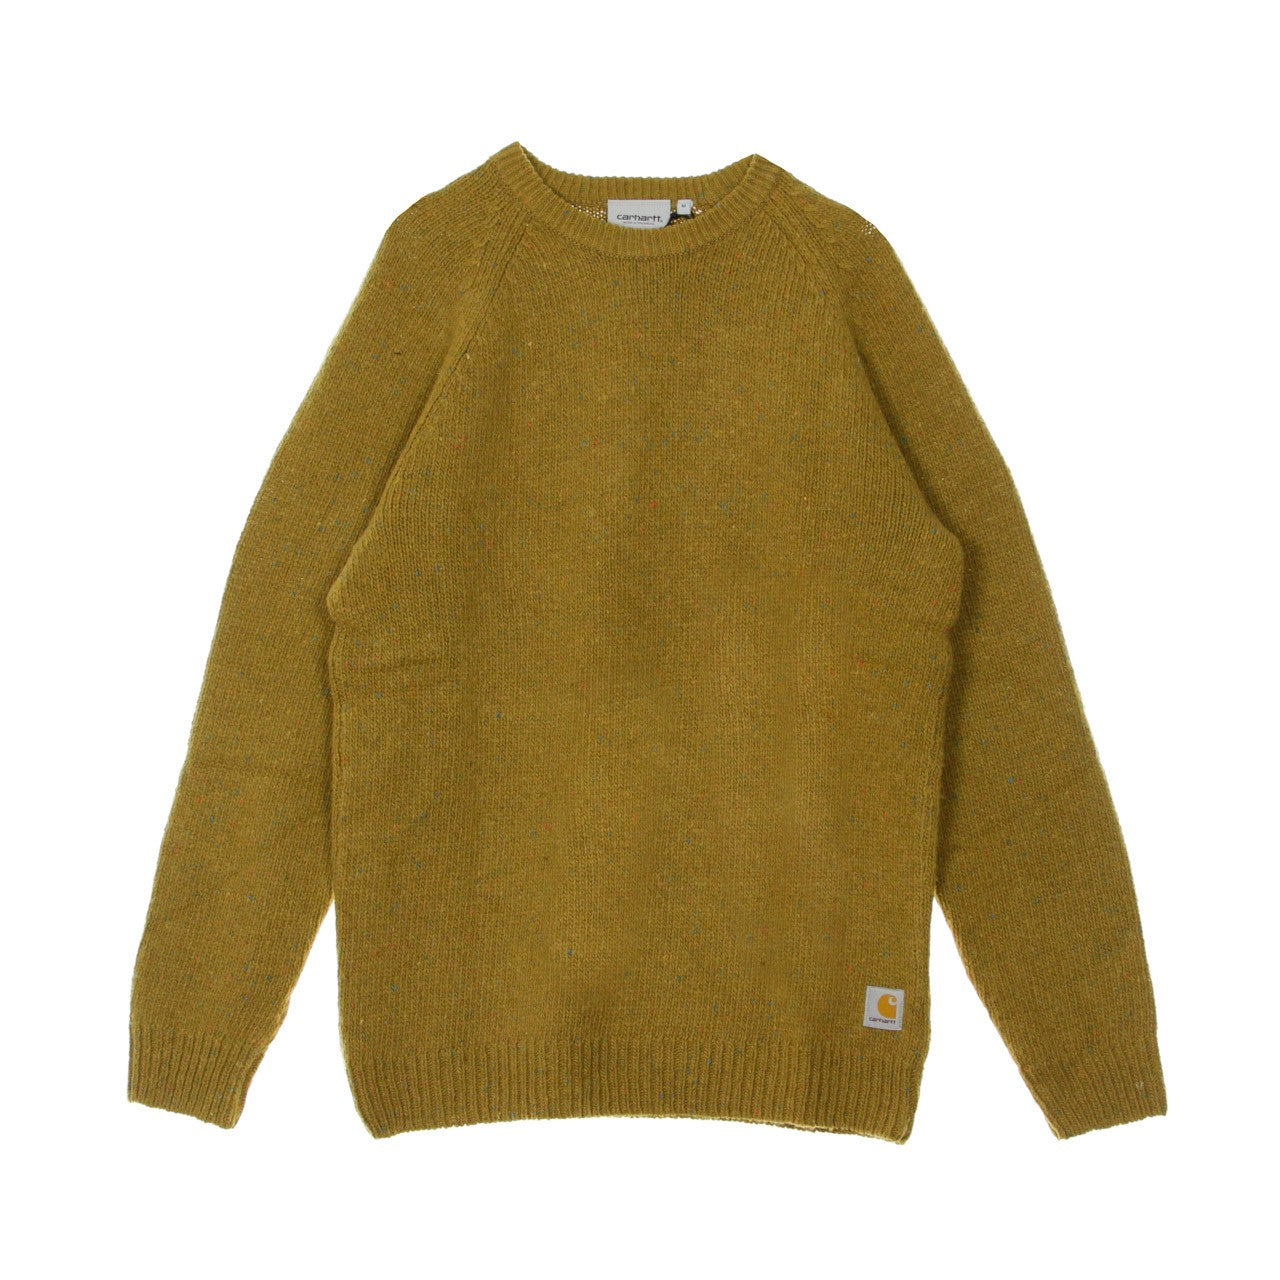 Maglione Uomo Anglistic Sweater Hamilton Brown Heather I010977